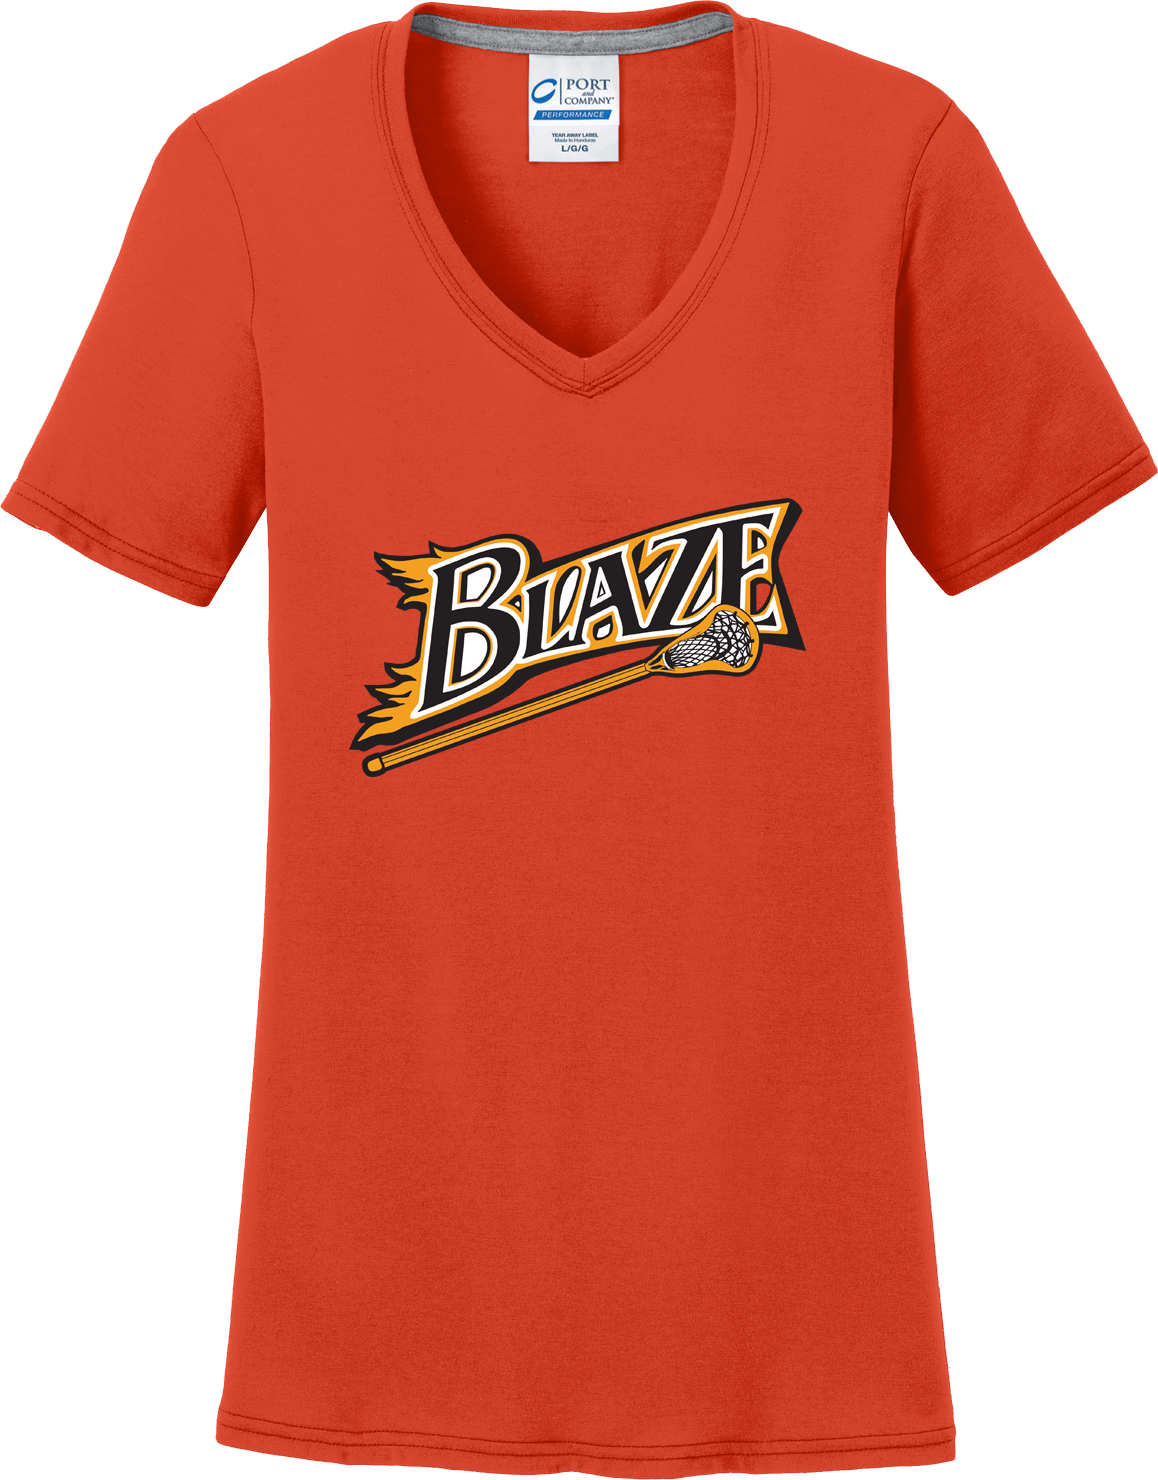 Blaze Lacrosse Women's Orange T-Shirt